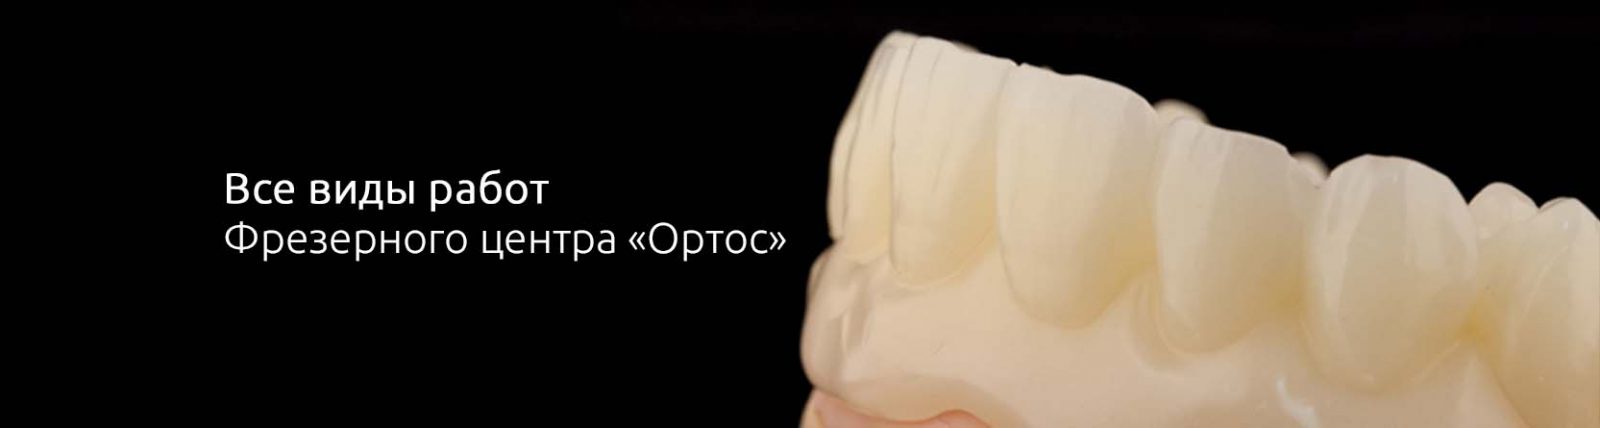 Новые возможности фрезерования в «Ортос» 2 - Фрезерный CAD/CAM центр Ортос Новости